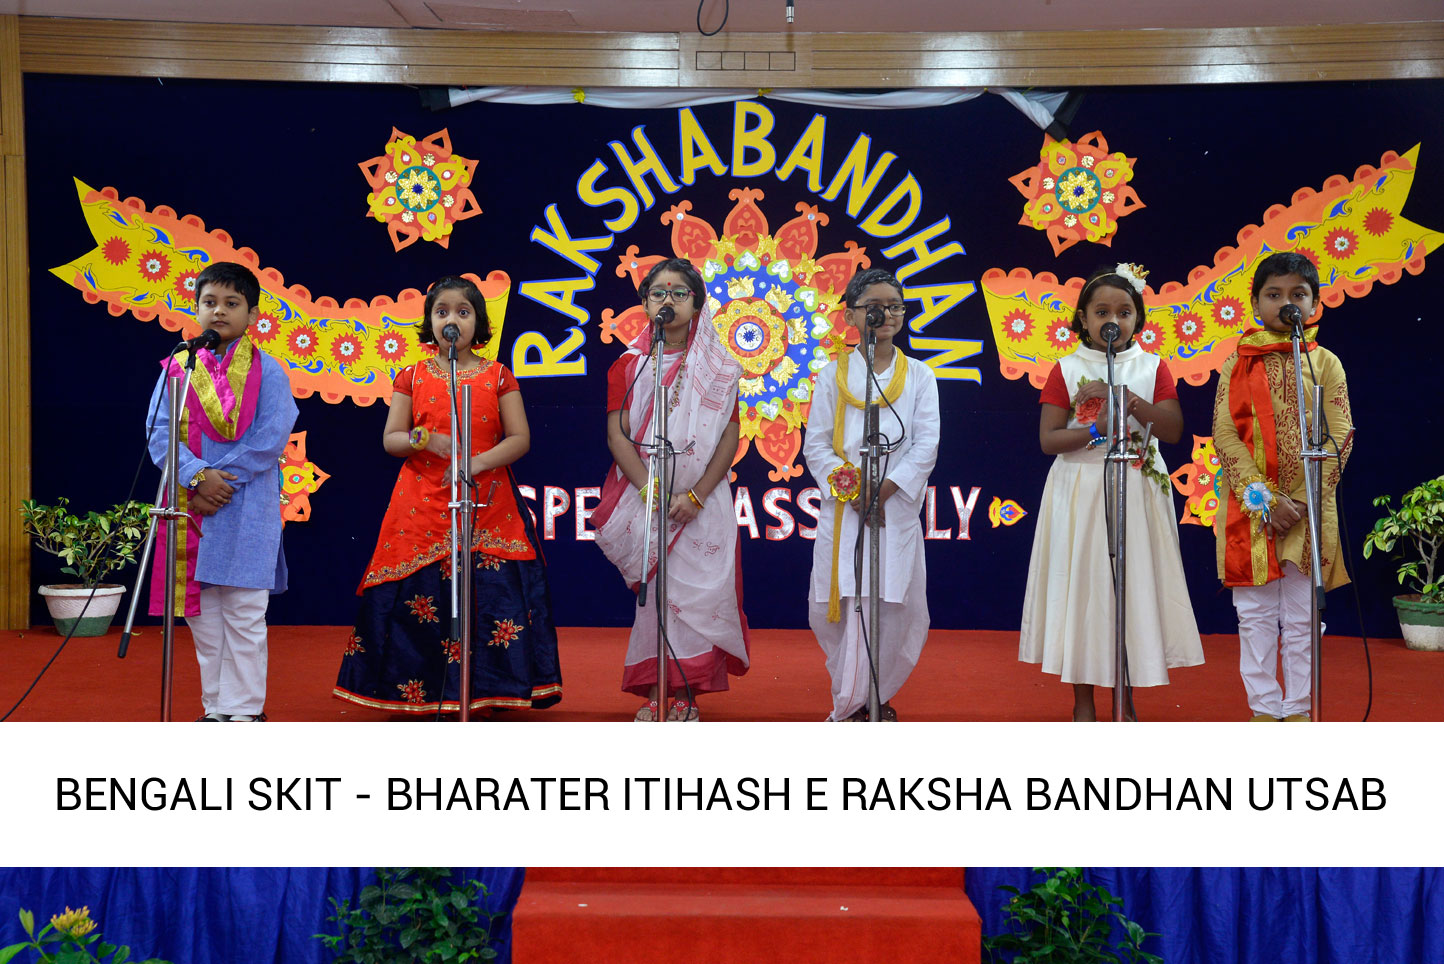 Raksha Bandhan Assembly 2019 – 20